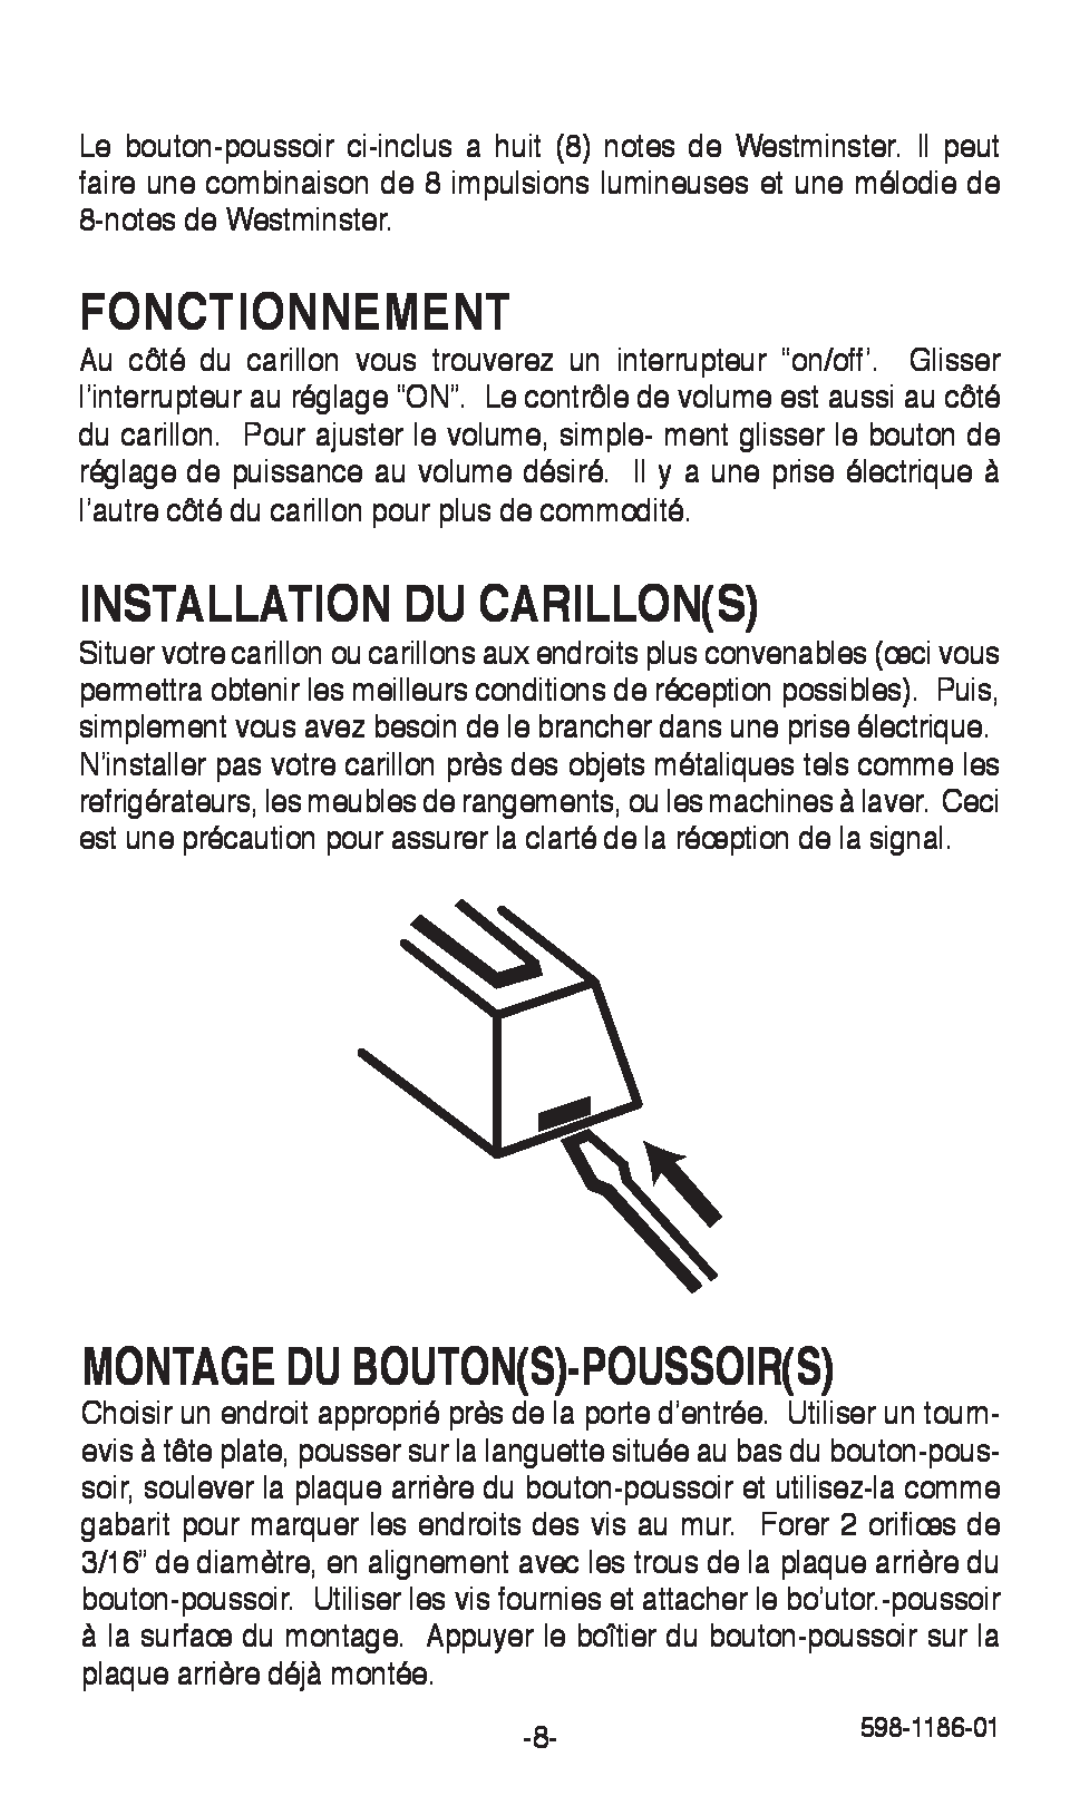 Desa 598-1186-01 installation instructions Fonctionnement, Installation Du Carillons, Montage Du Boutons-Poussoirs 